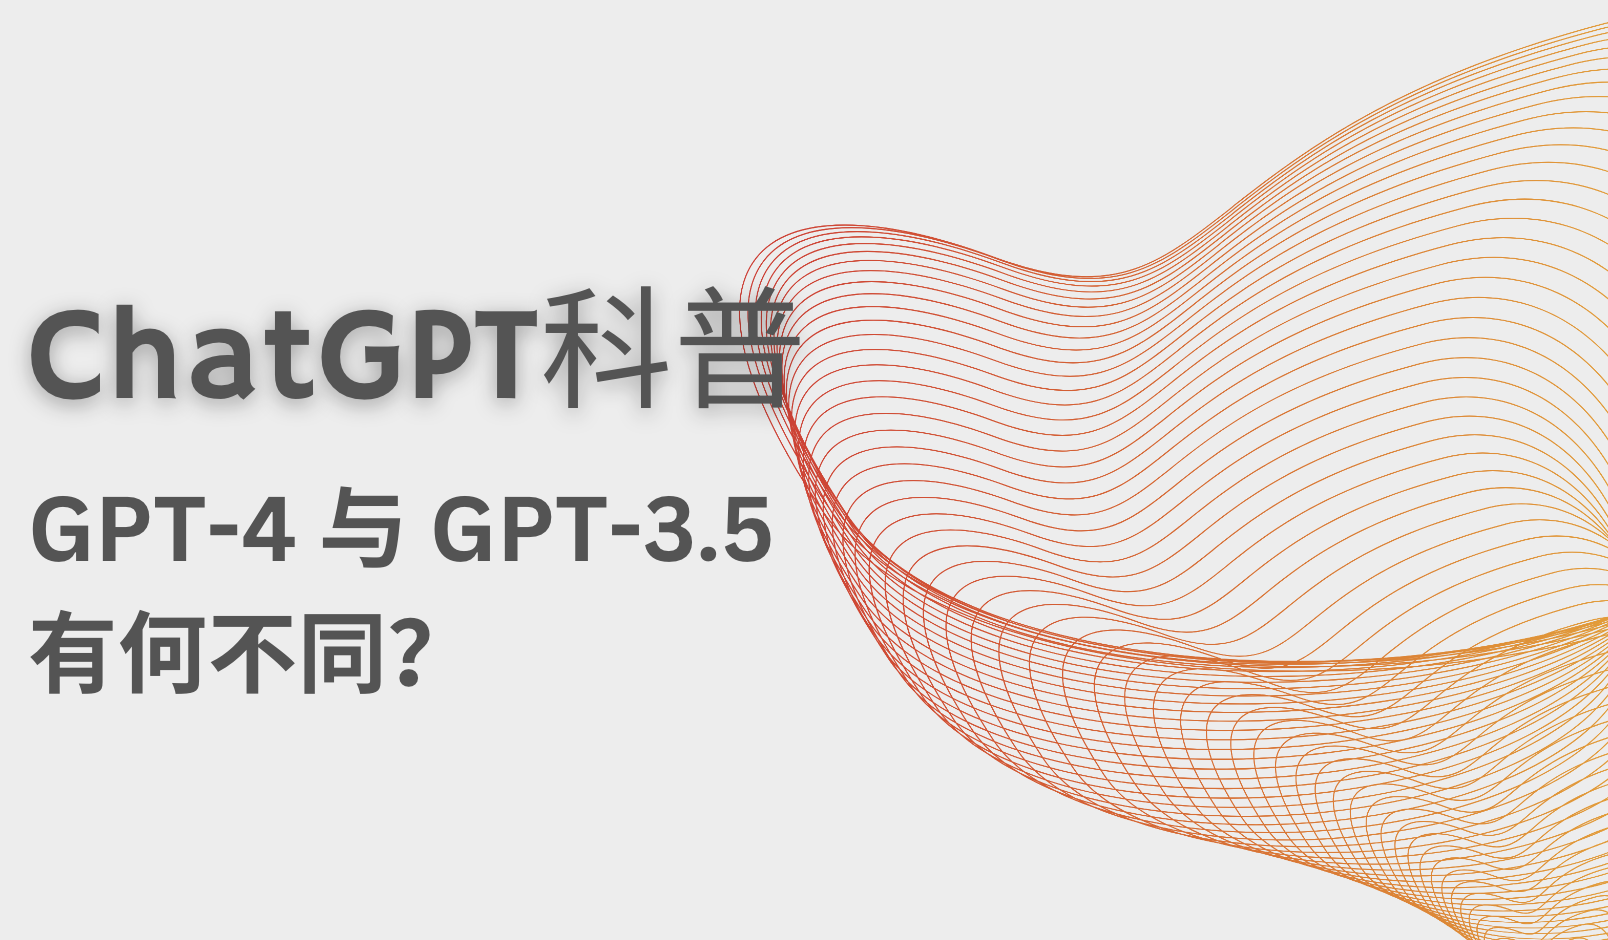 ChatGPT科普向｜GPT-4 与 GPT-3.5 有何不同？